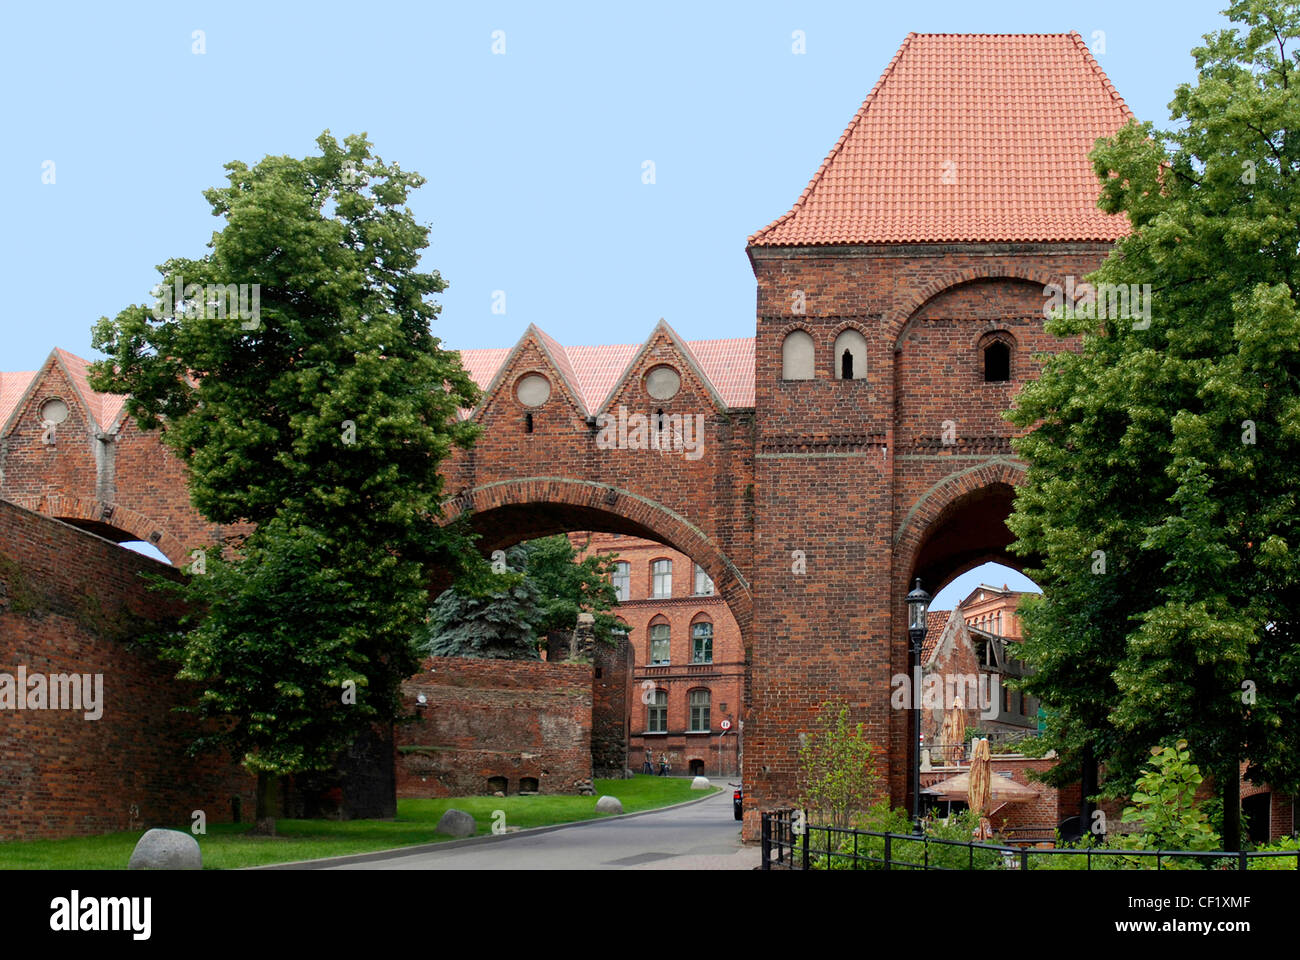 Parte de la antigua muralla de la ciudad de Torun, con una torre de defensa del siglo XIII. Foto de stock